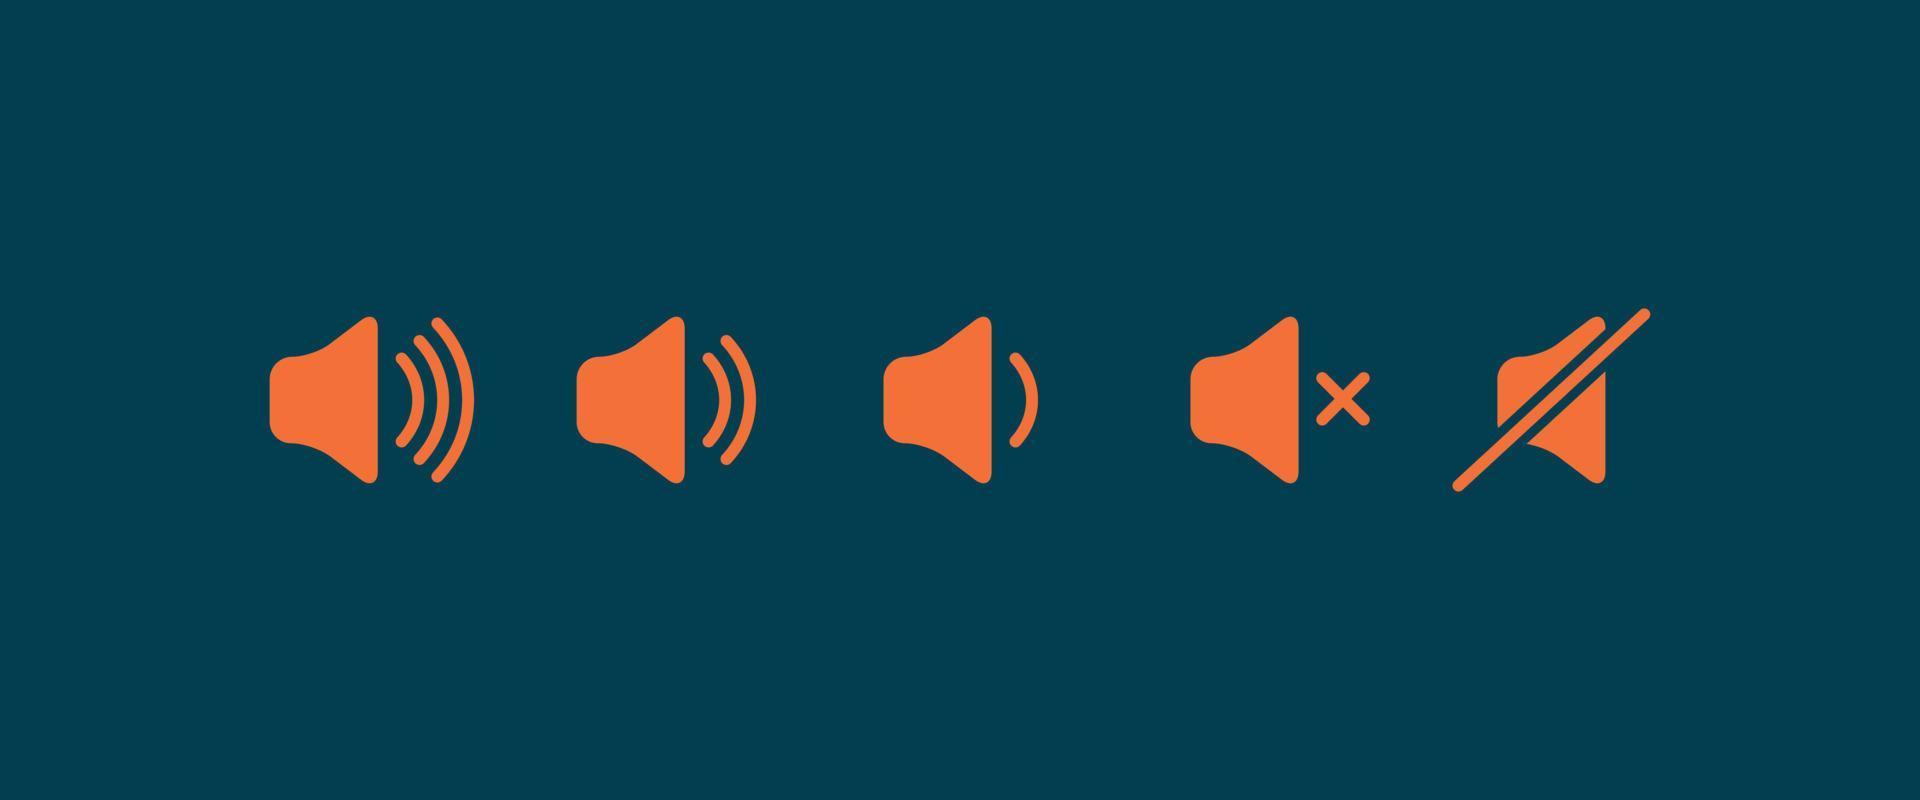 geluidsvolume plat pictogram. teken voor verhoogt en vermindert hard geluid. set oranje volumeniveaupictogrammen op blauwe achtergrond vector